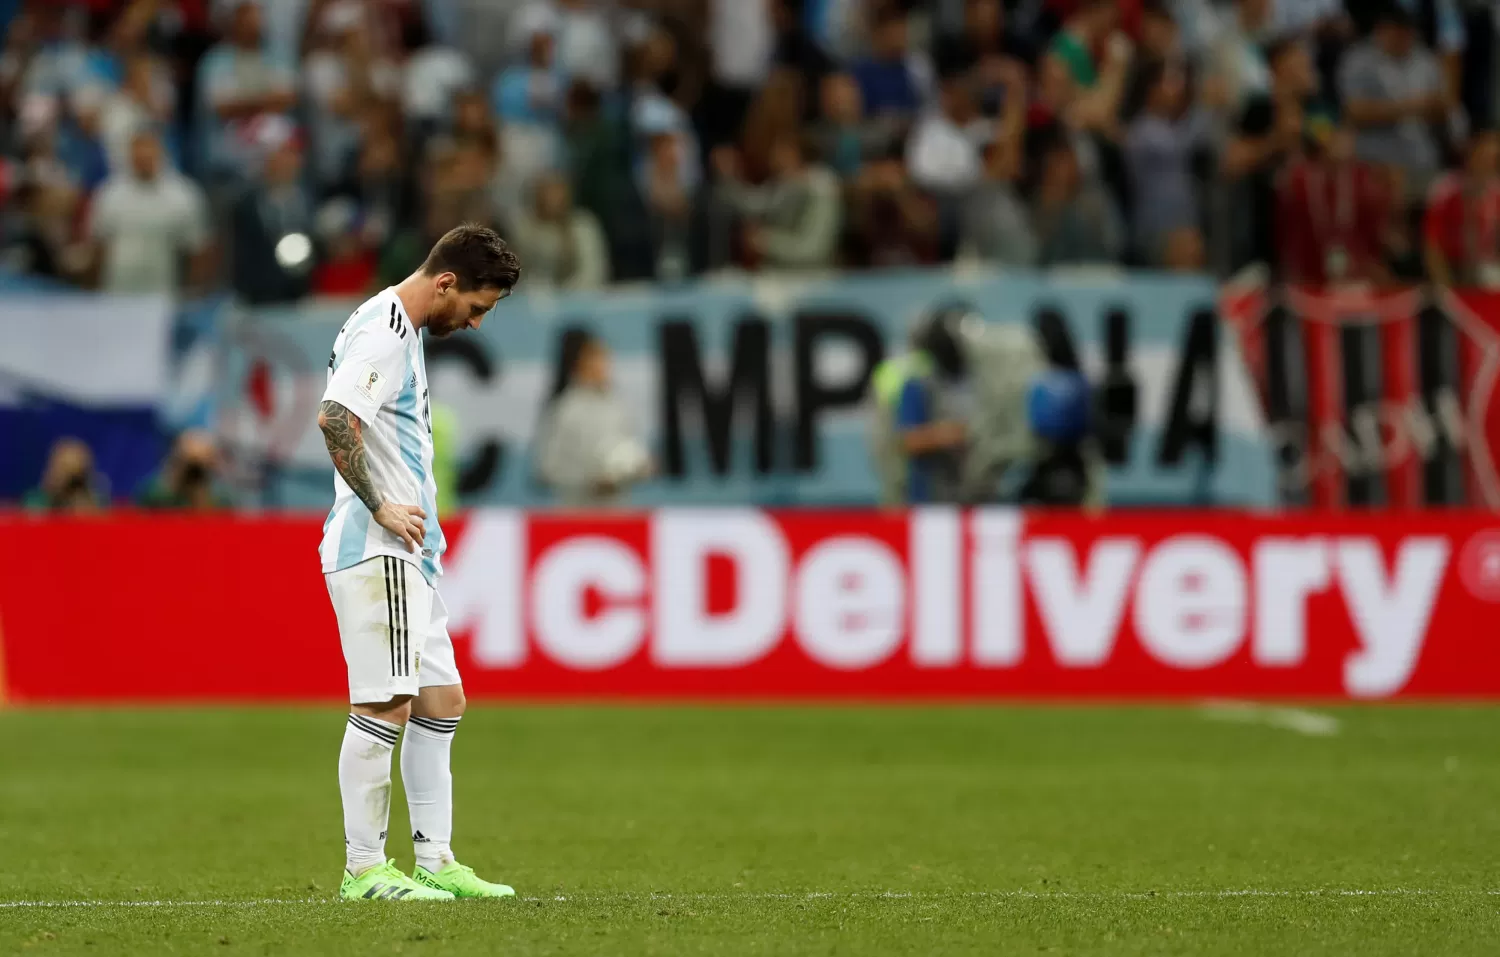 AL BORDE DE LA ELIMINACIÓN. Messi no pudo hacer nada por la Selección ante Croacia. (REUTERS)